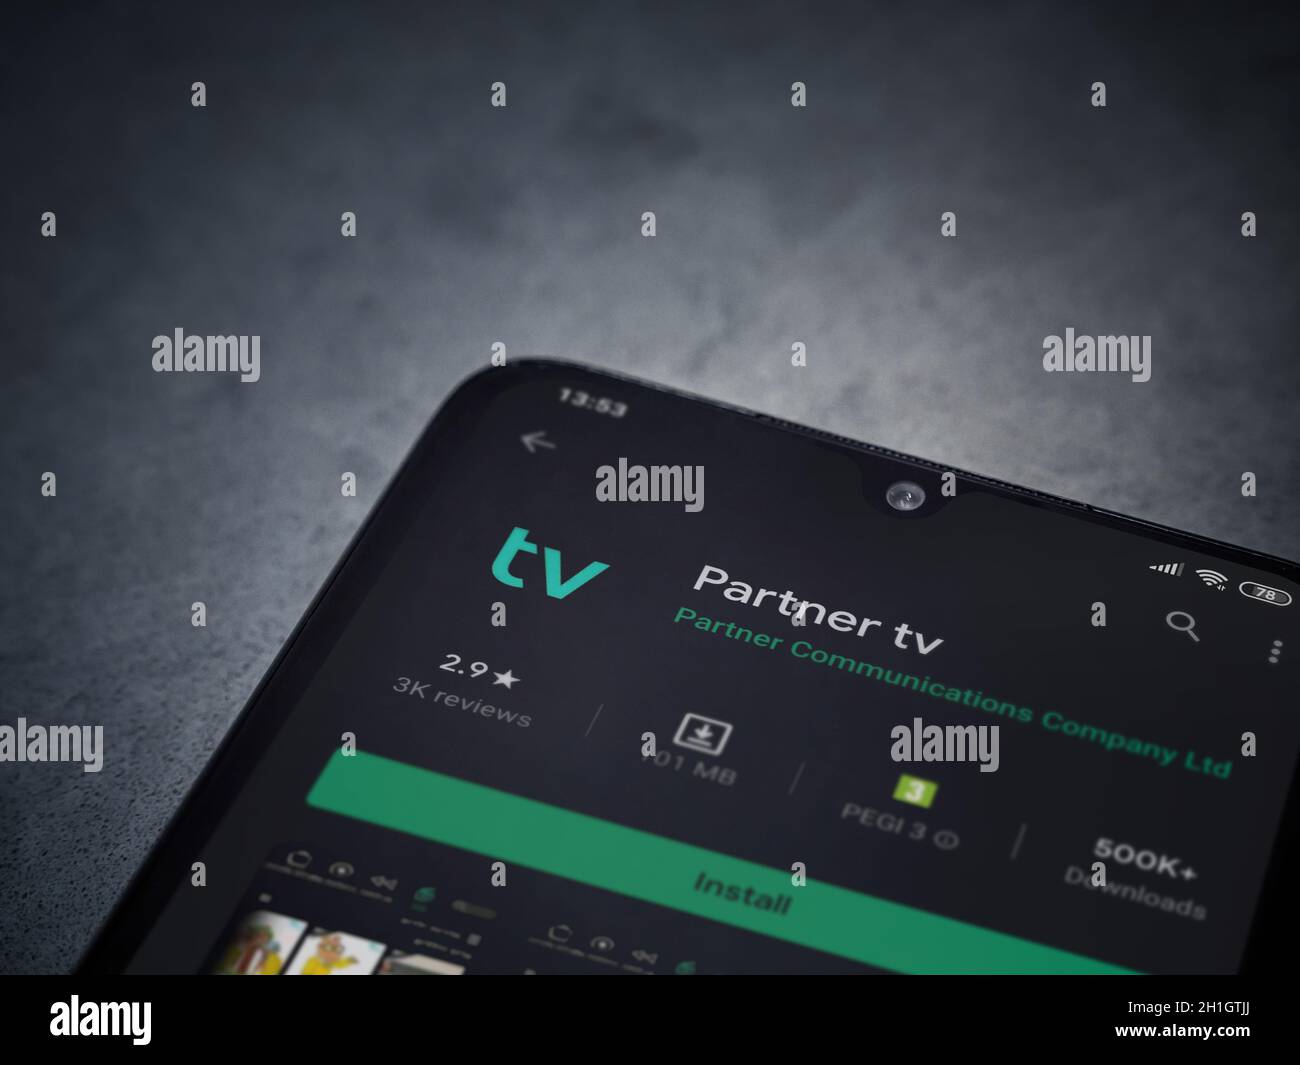 LOD, Israele - 8 luglio 2020: App partner tv play store page sul display di uno smartphone nero su sfondo di marmo scuro in pietra. Vista dall'alto piatta Foto Stock